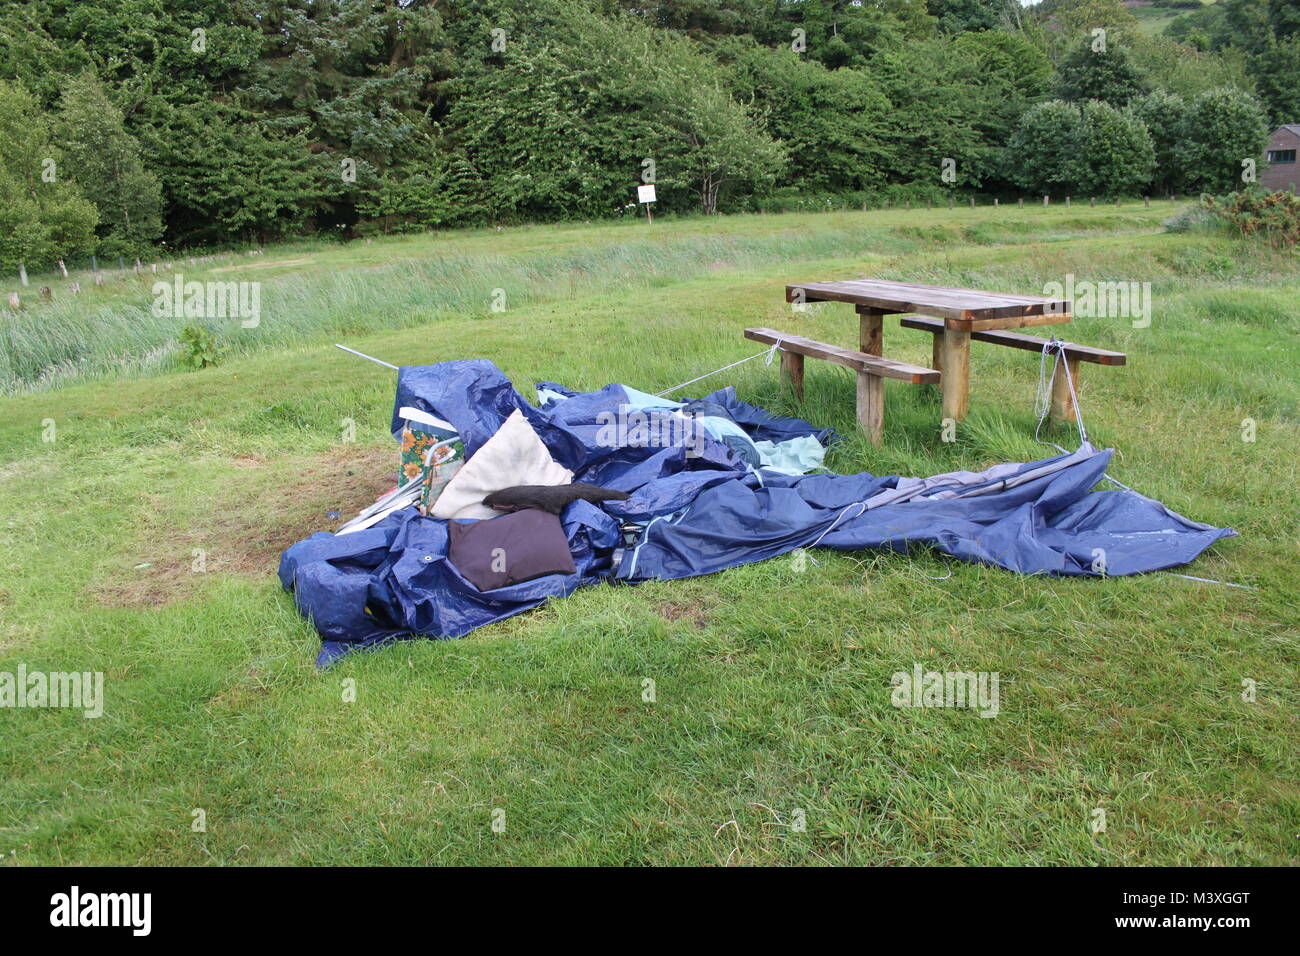 Cestino da picnic con fiori, vino e cibo sul tavolo in pietra al coperto  Foto stock - Alamy